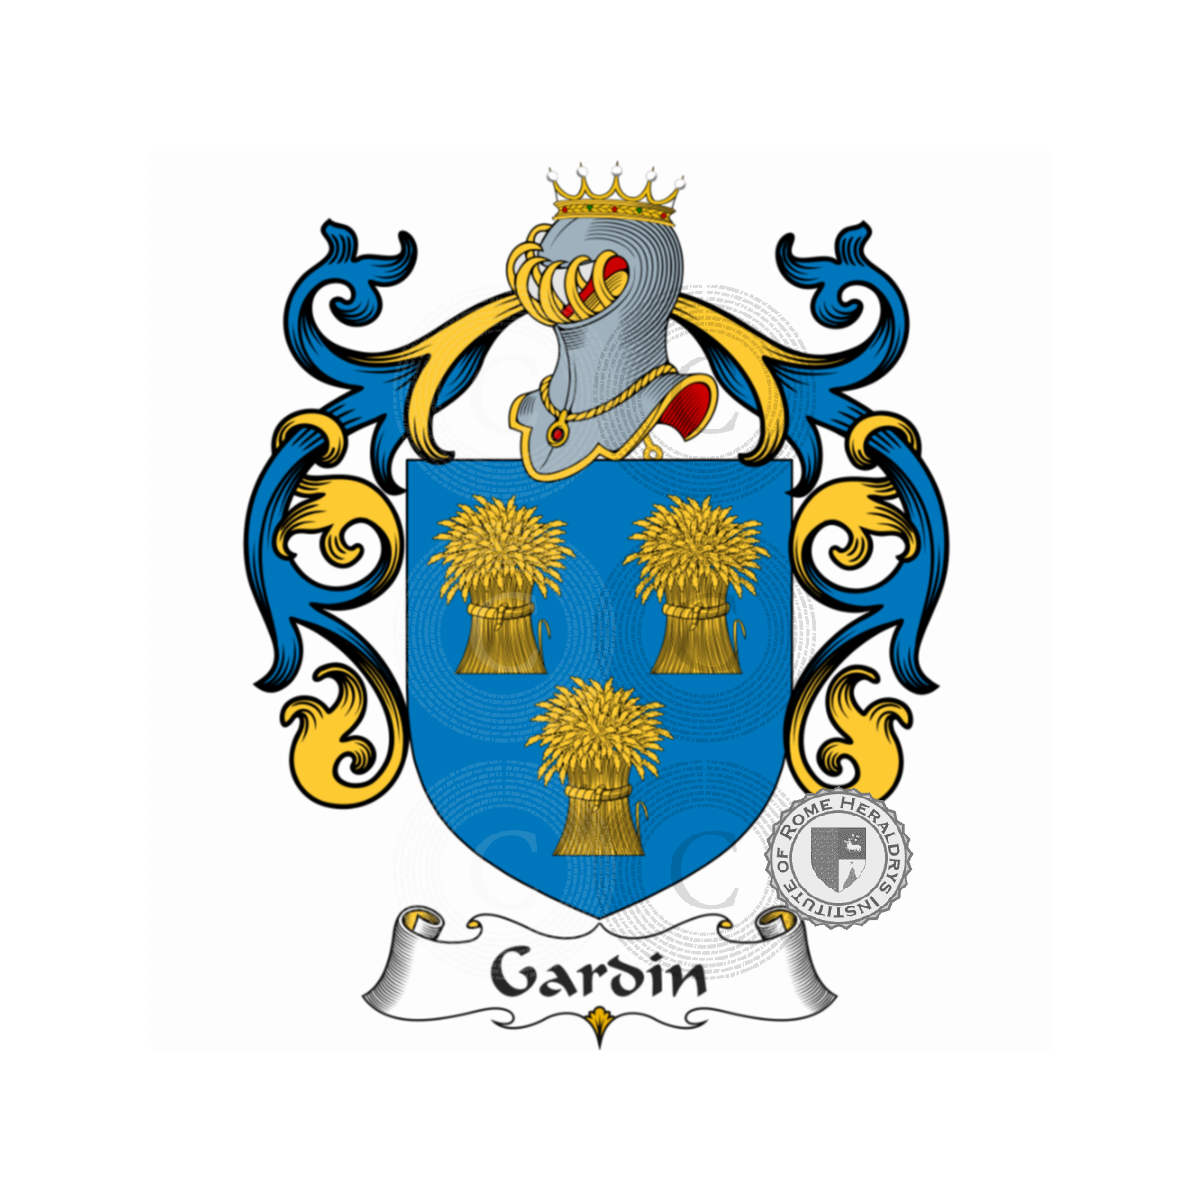 Stemma della famigliaGardin de Boishamon, du Gardin,Gardi,Gardin de Boishamon,Gardin de Lapillardière